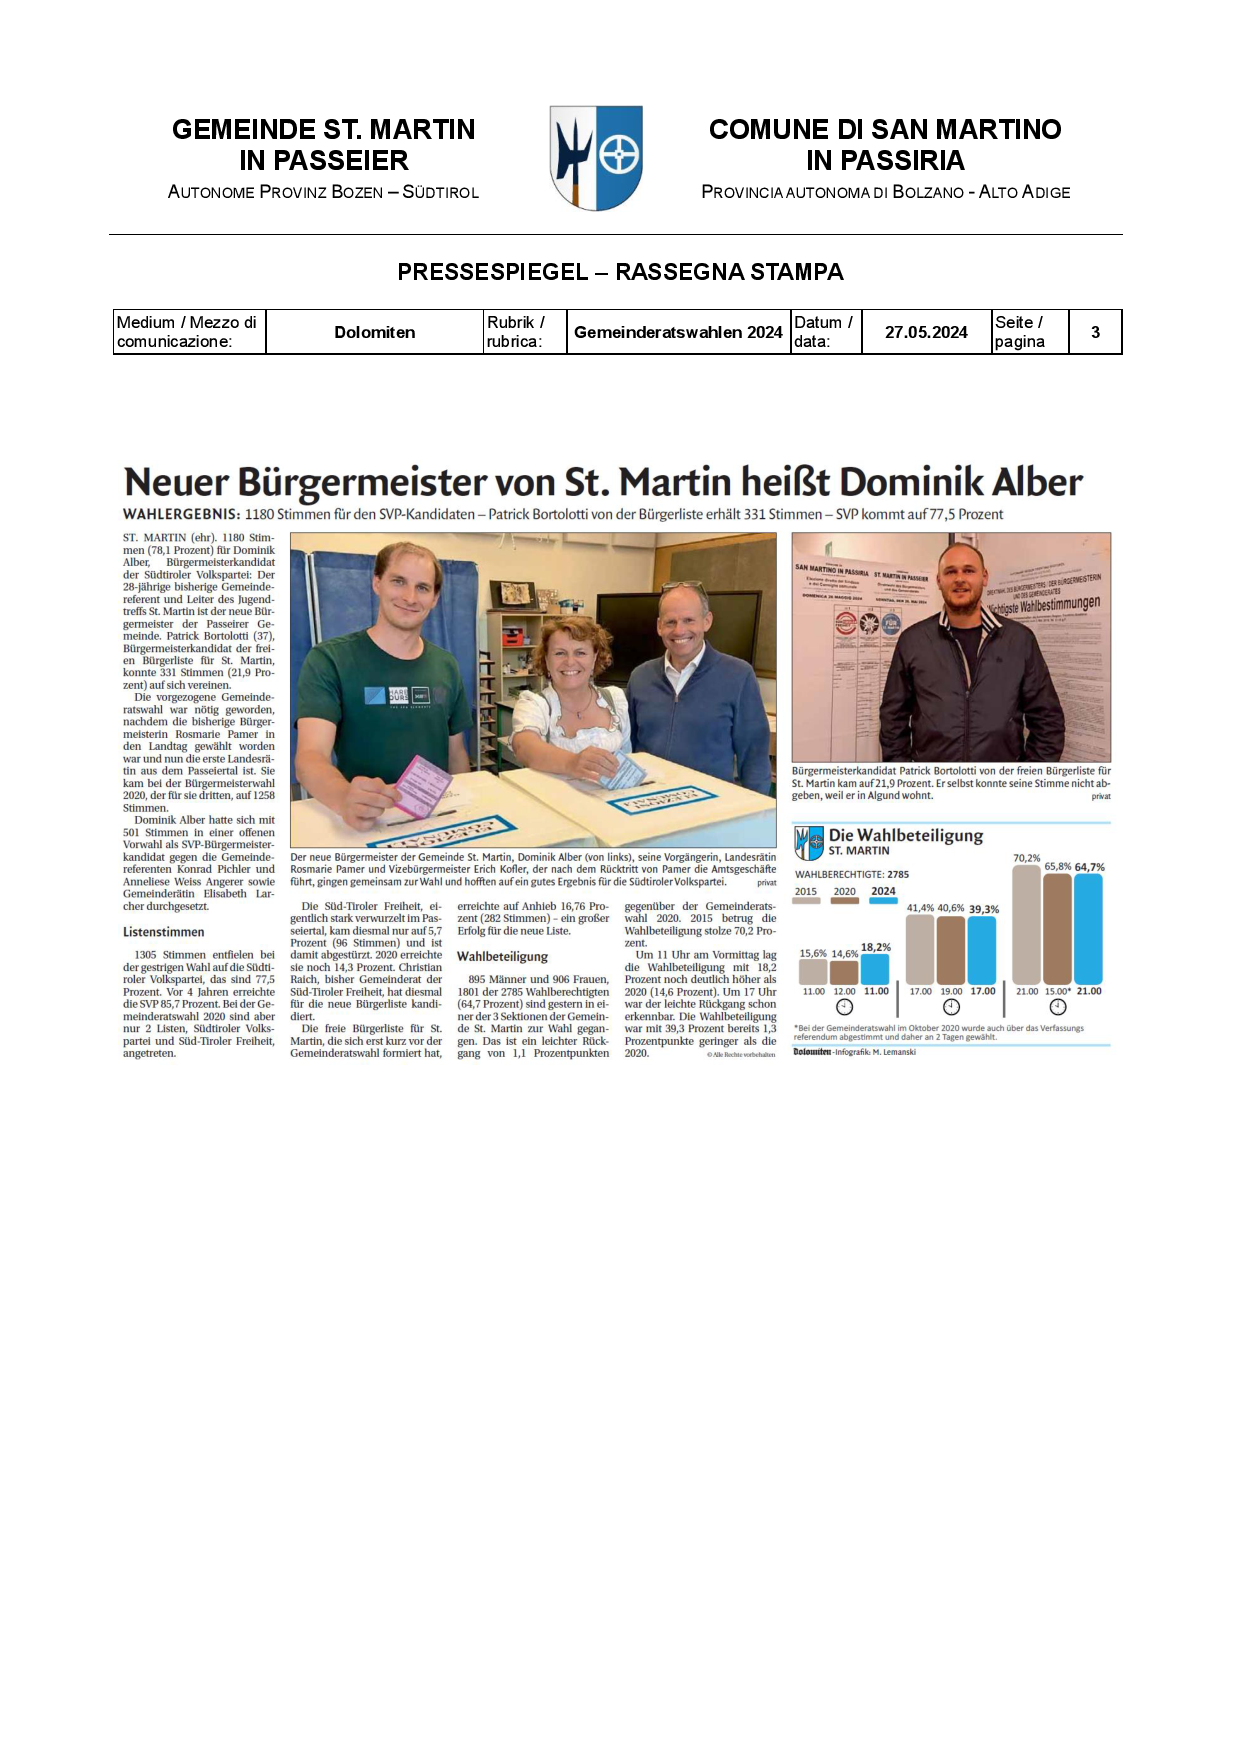 Dolomiten - Il nuovo Sindaco di San Martino è Dominik Alber